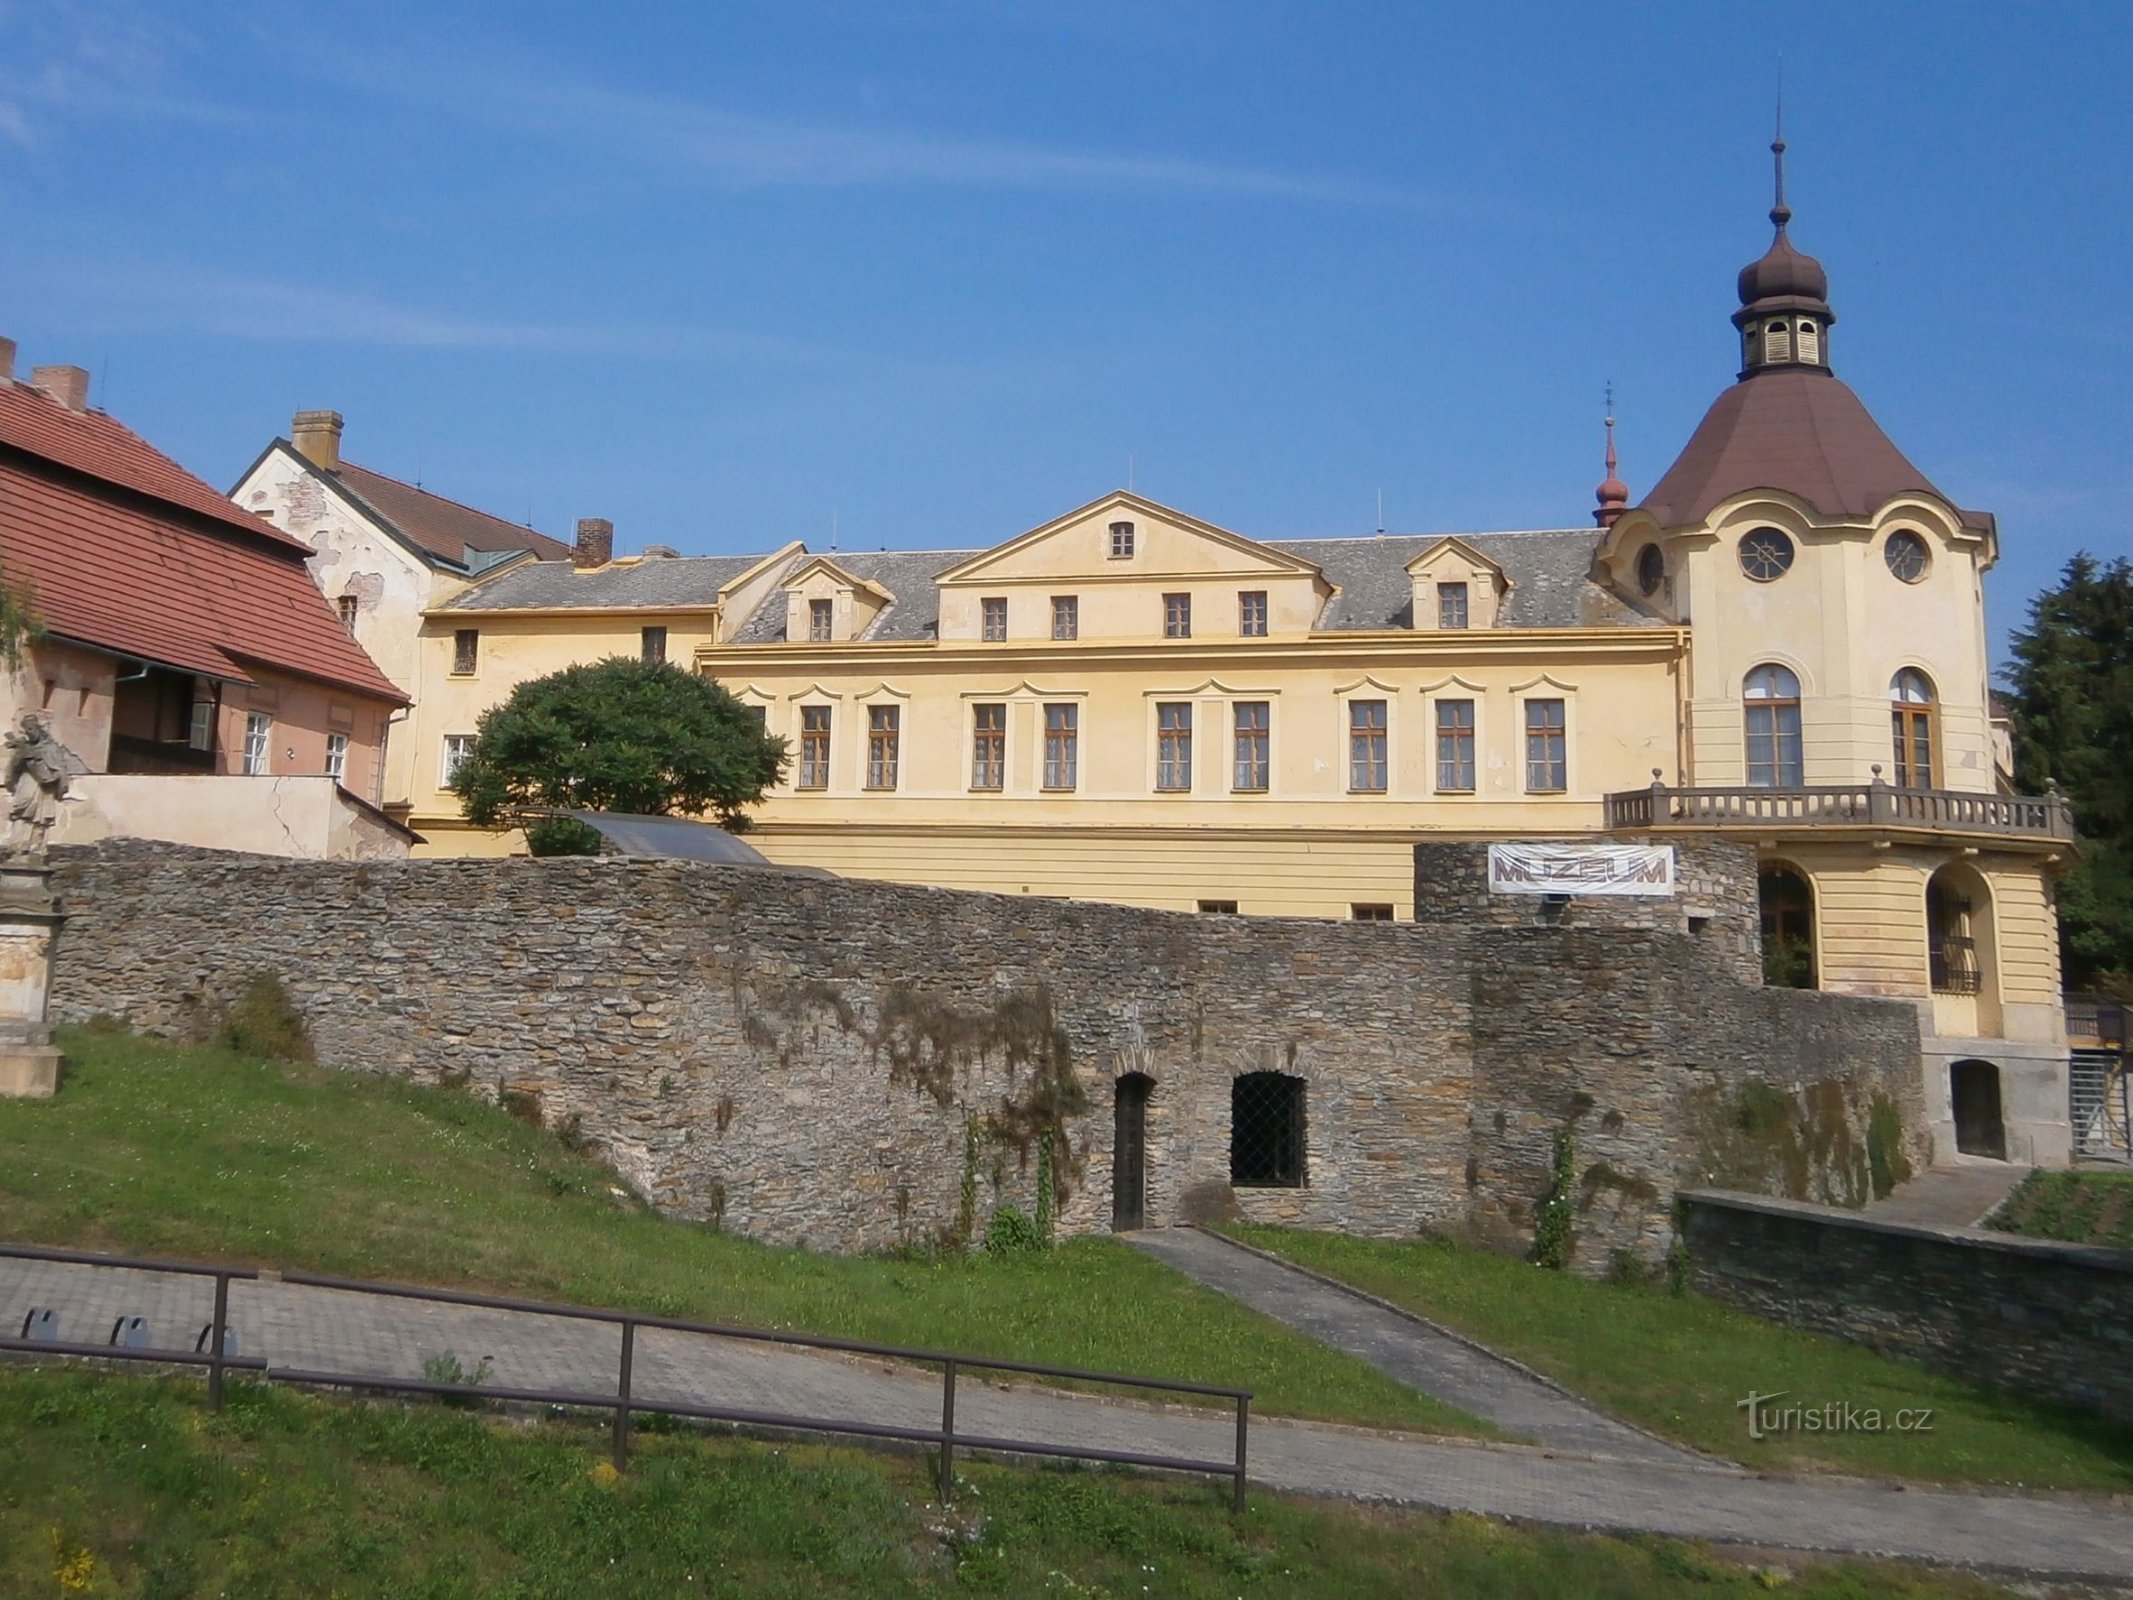 Το βοηθητικό κτίριο του πανδοχείου Steidler που μετατράπηκε σε μοναστήρι (Česká Skalice, 5.7.2017 Ιουλίου XNUMX)